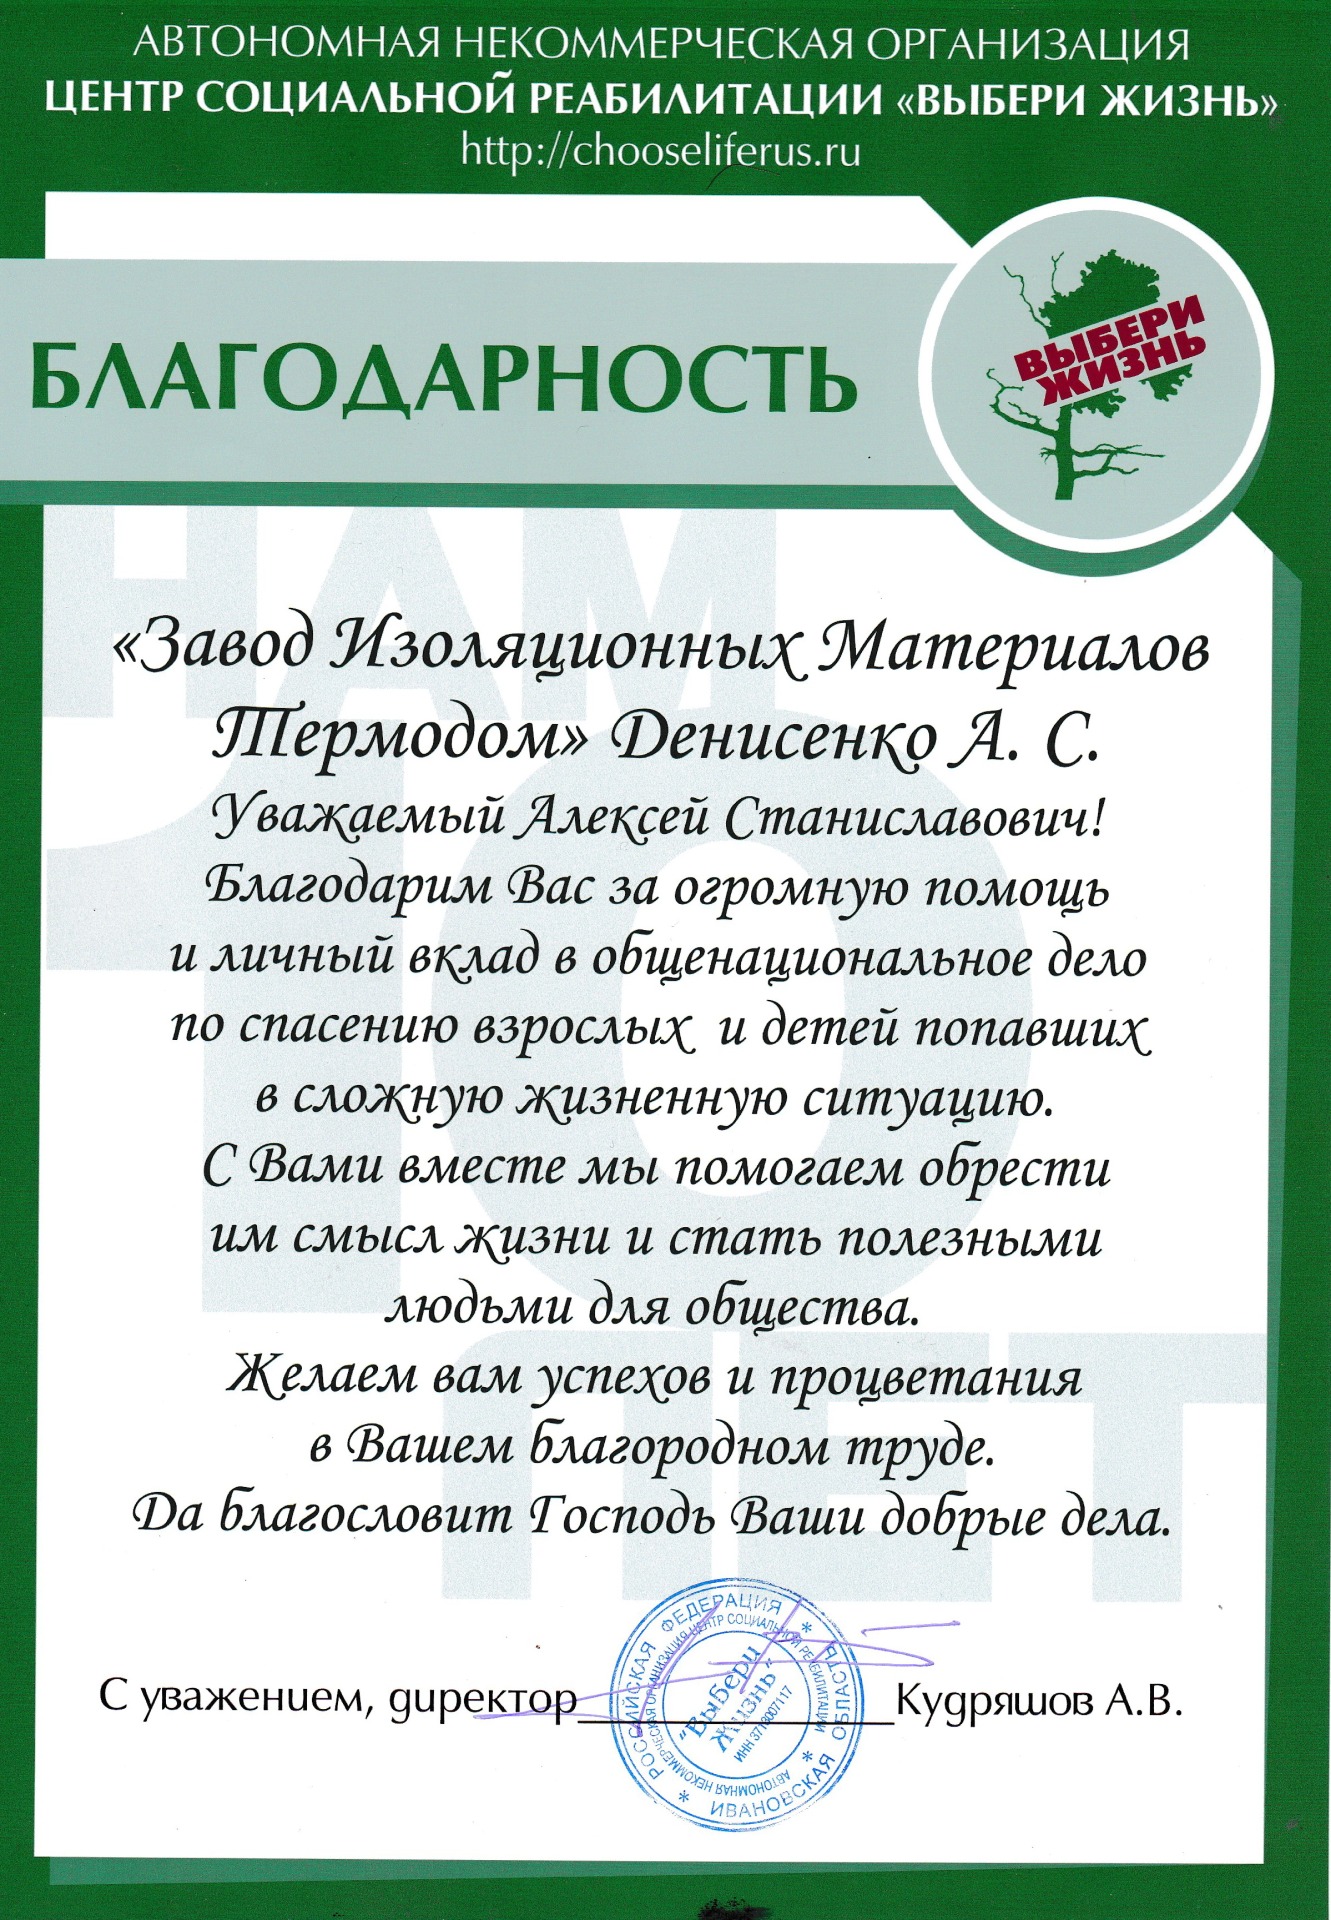 Благодарственное письмо отзыв Завод изоляционных материалов Термодом Краснодар Новосибирск